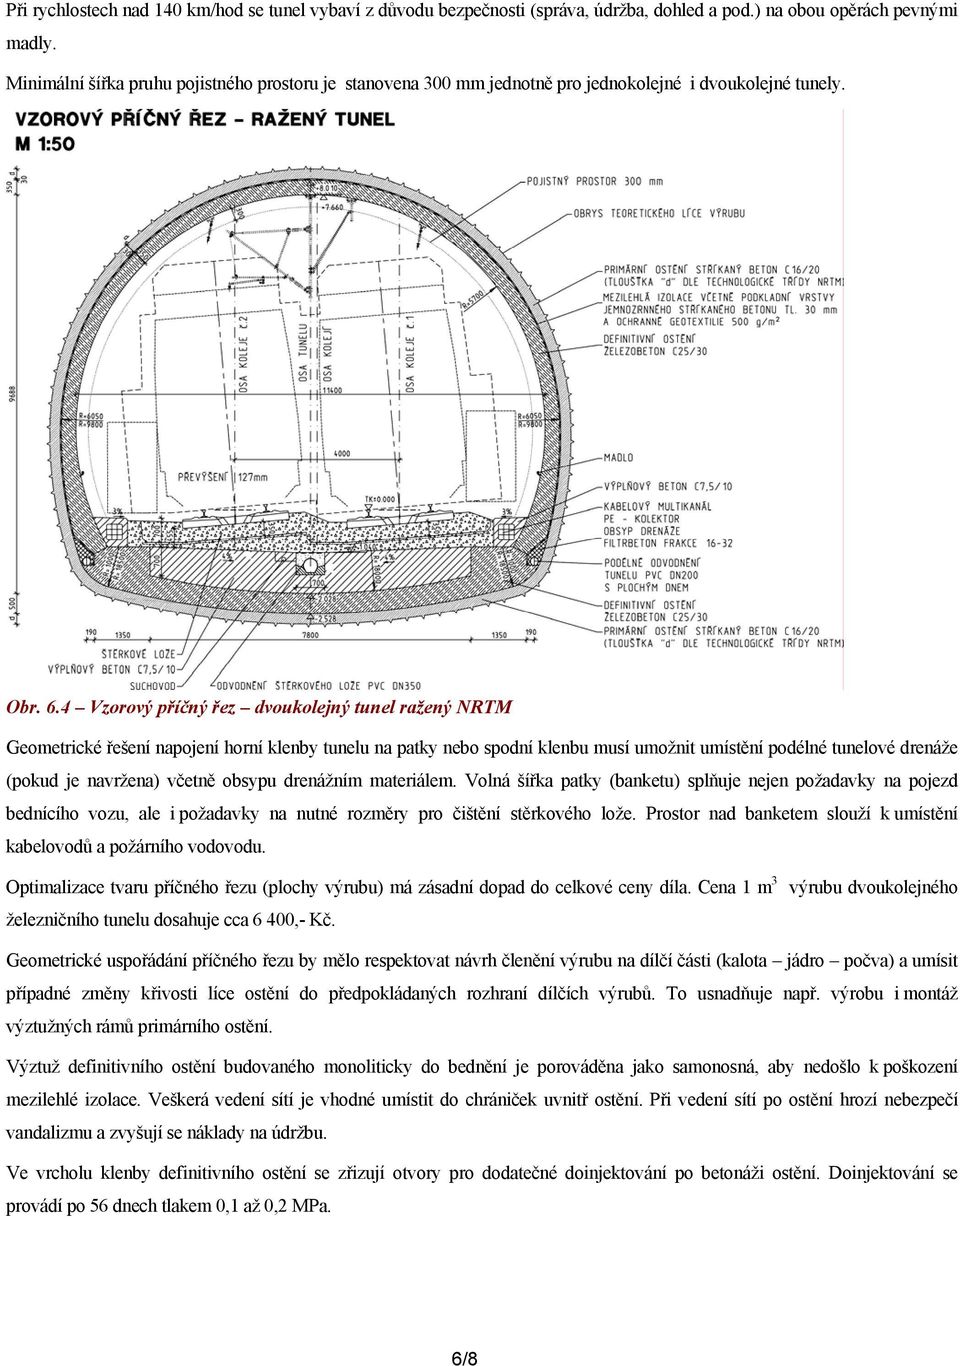 4 Vzorový příčný řez dvoukolejný tunel ražený NRTM Geometrické řešení napojení horní klenby tunelu na patky nebo spodní klenbu musí umožnit umístění podélné tunelové drenáže (pokud je navržena)